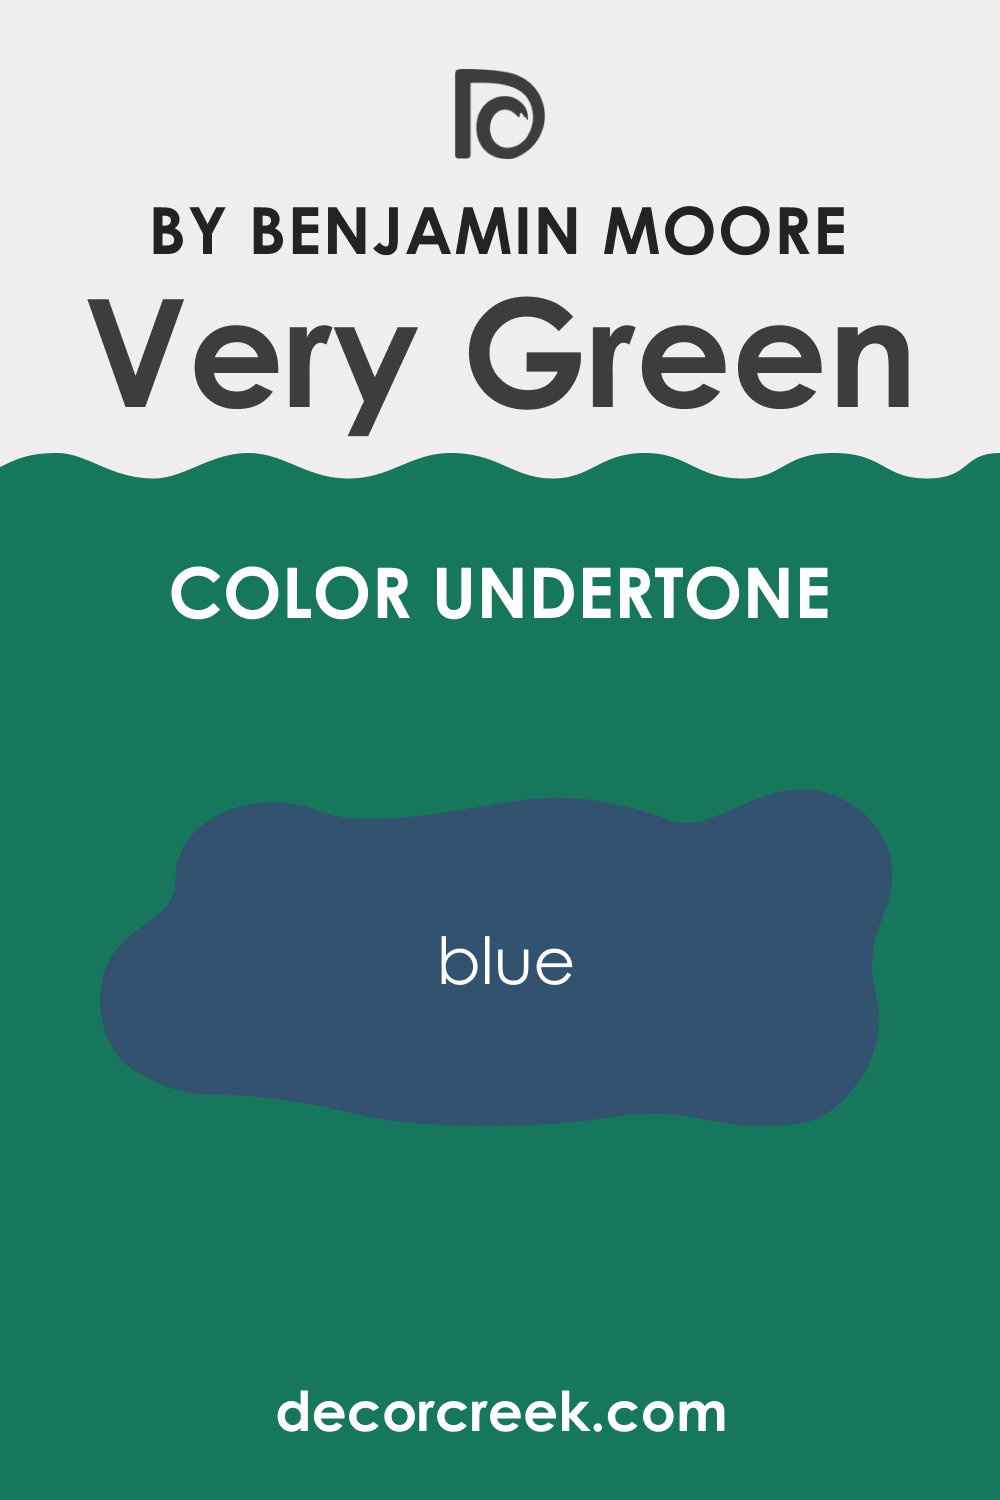 Undertones of Very Green 2040-30